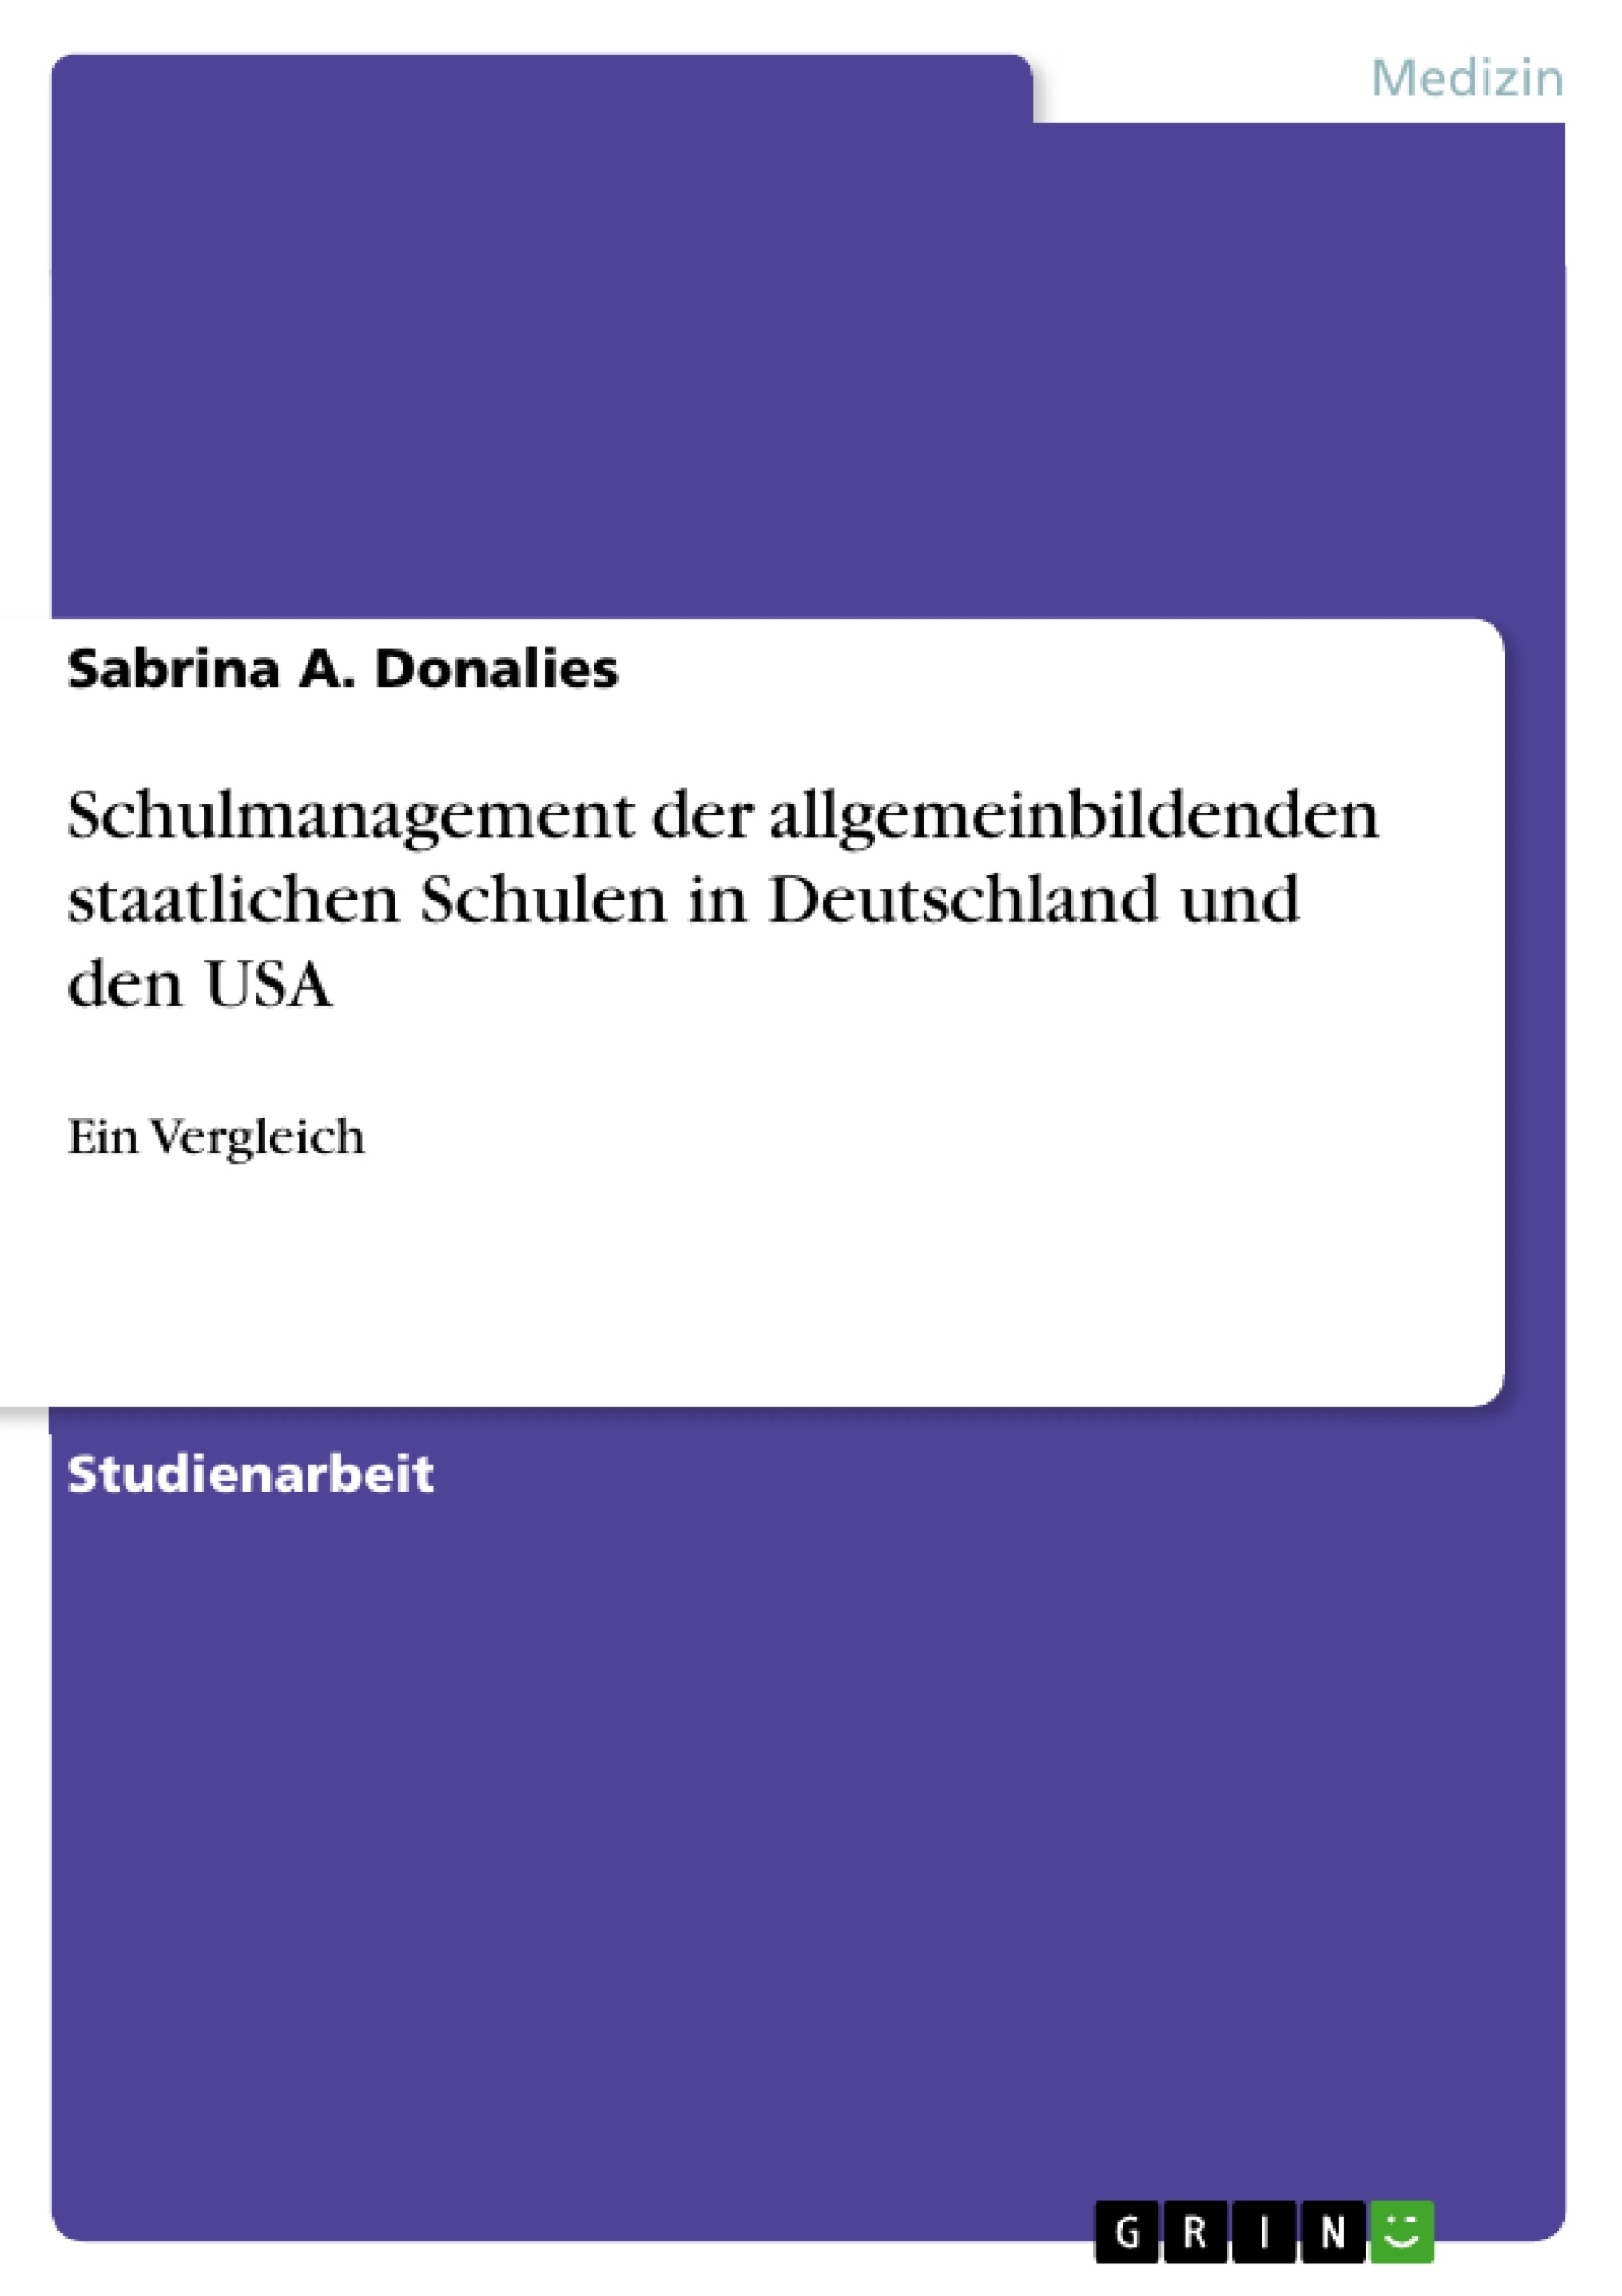 Título: Schulmanagement der allgemeinbildenden staatlichen Schulen in Deutschland und den USA